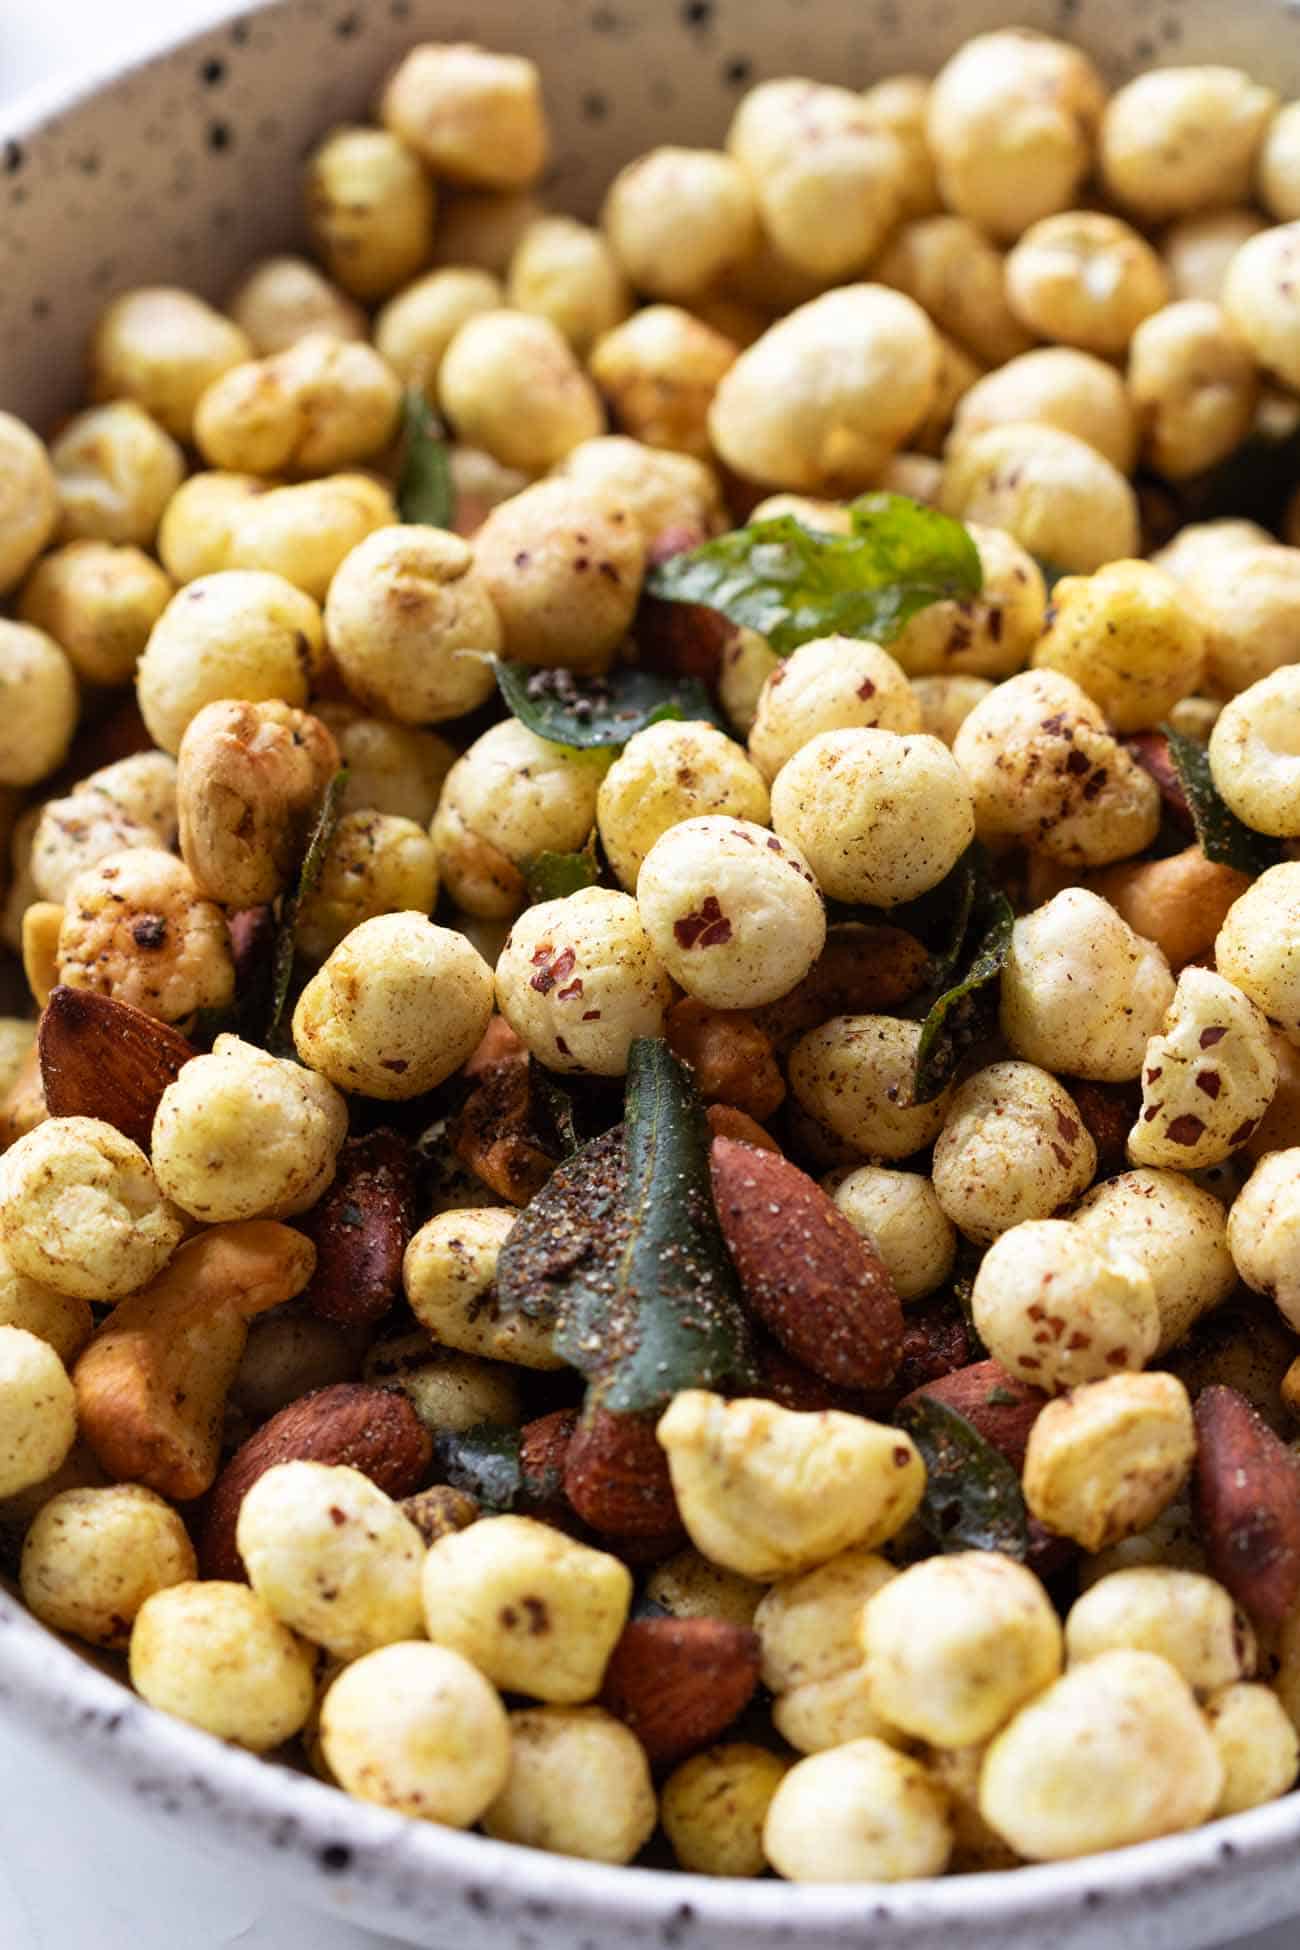 Closeup of roasted makhana and nuts